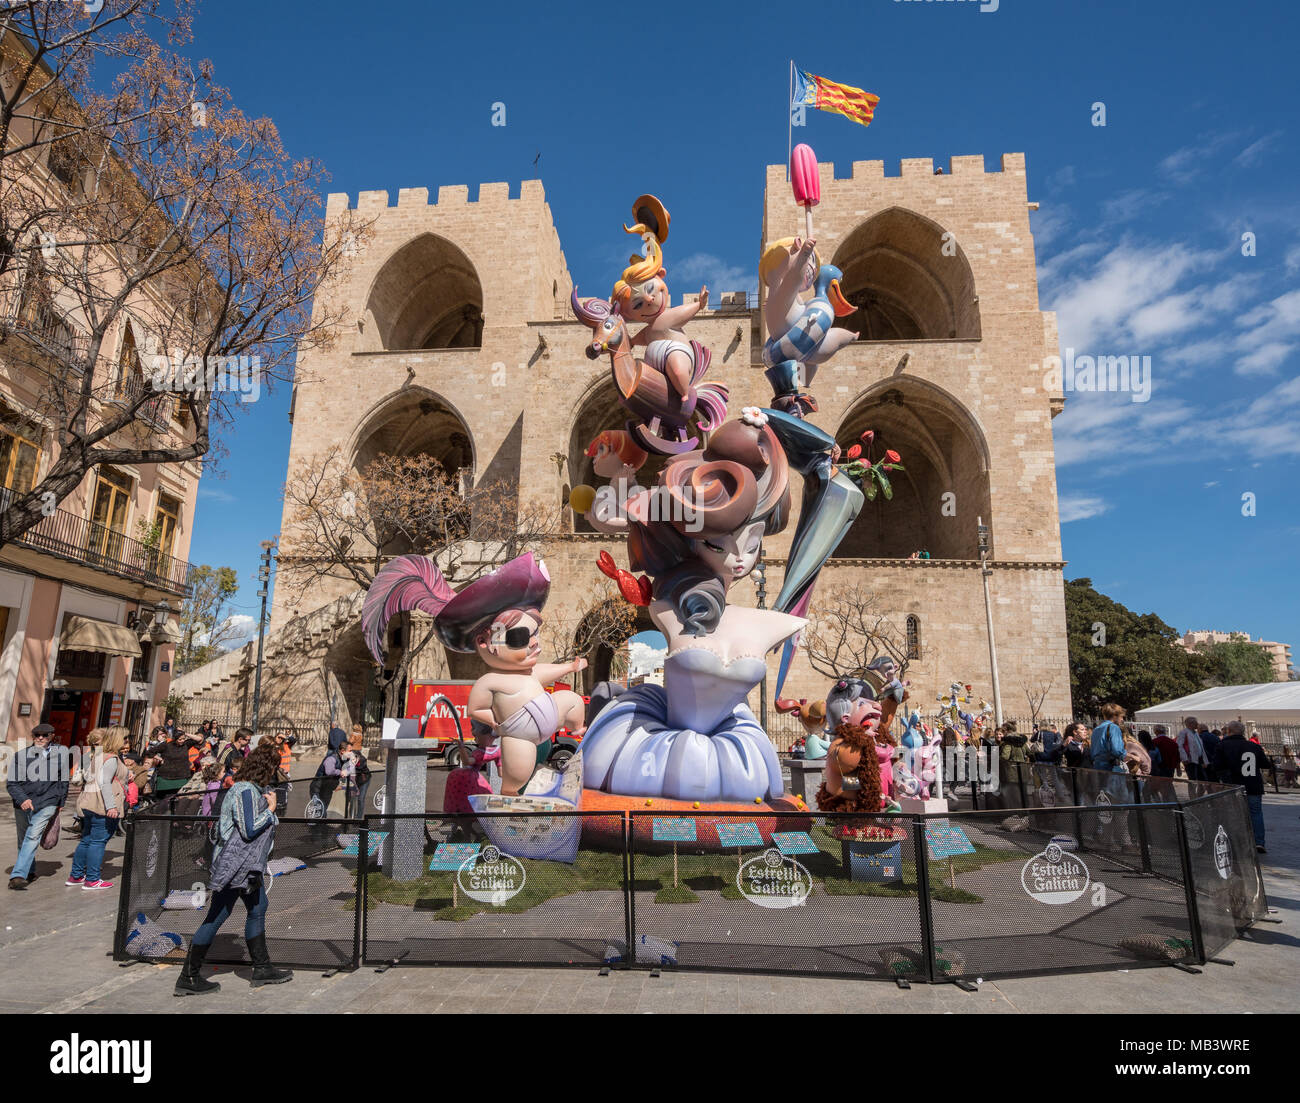 Estatuas complejas creadas para las Fallas de Valencia Foto de stock